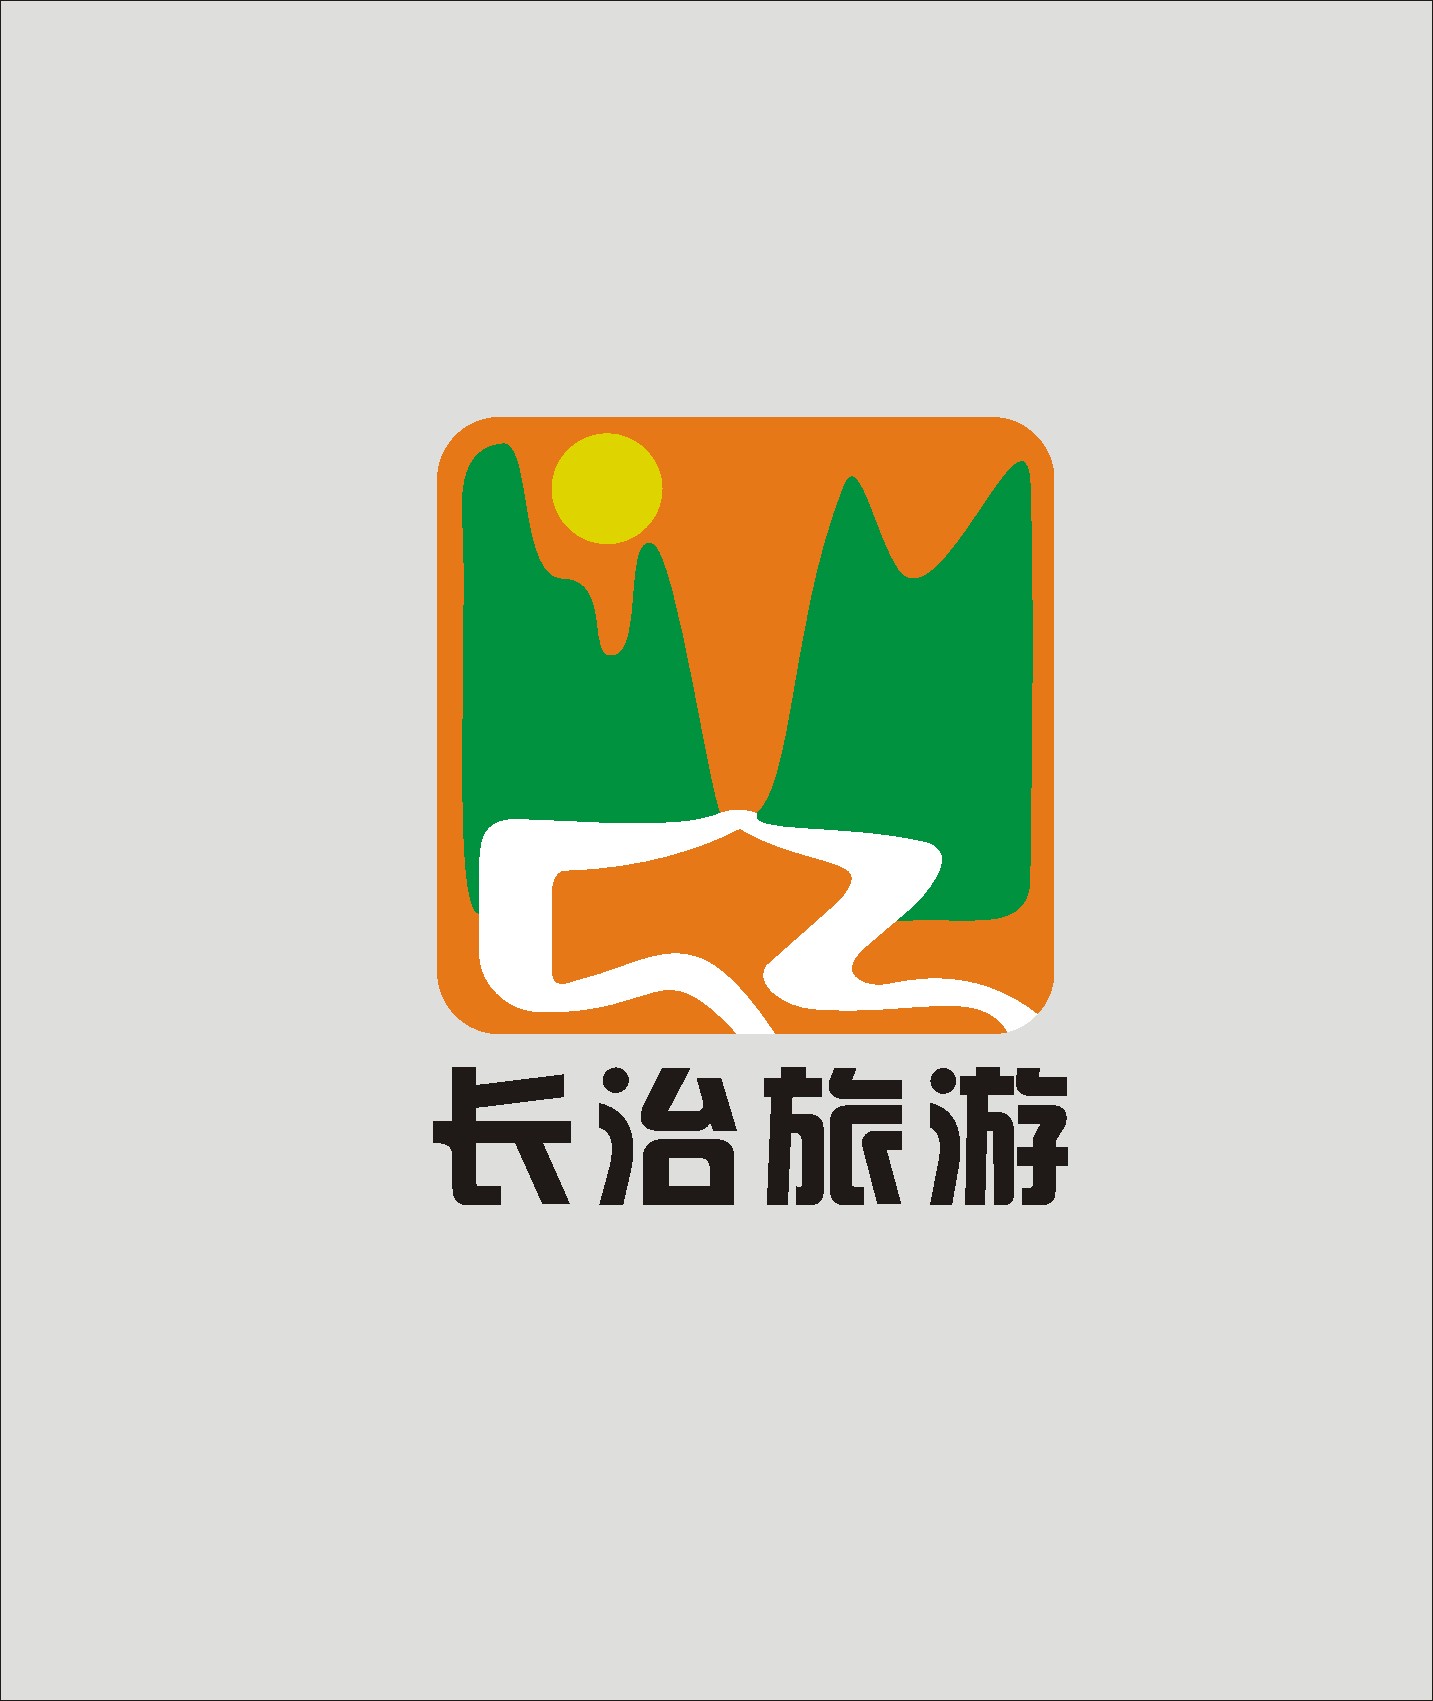 旅游标志logo及简介图片